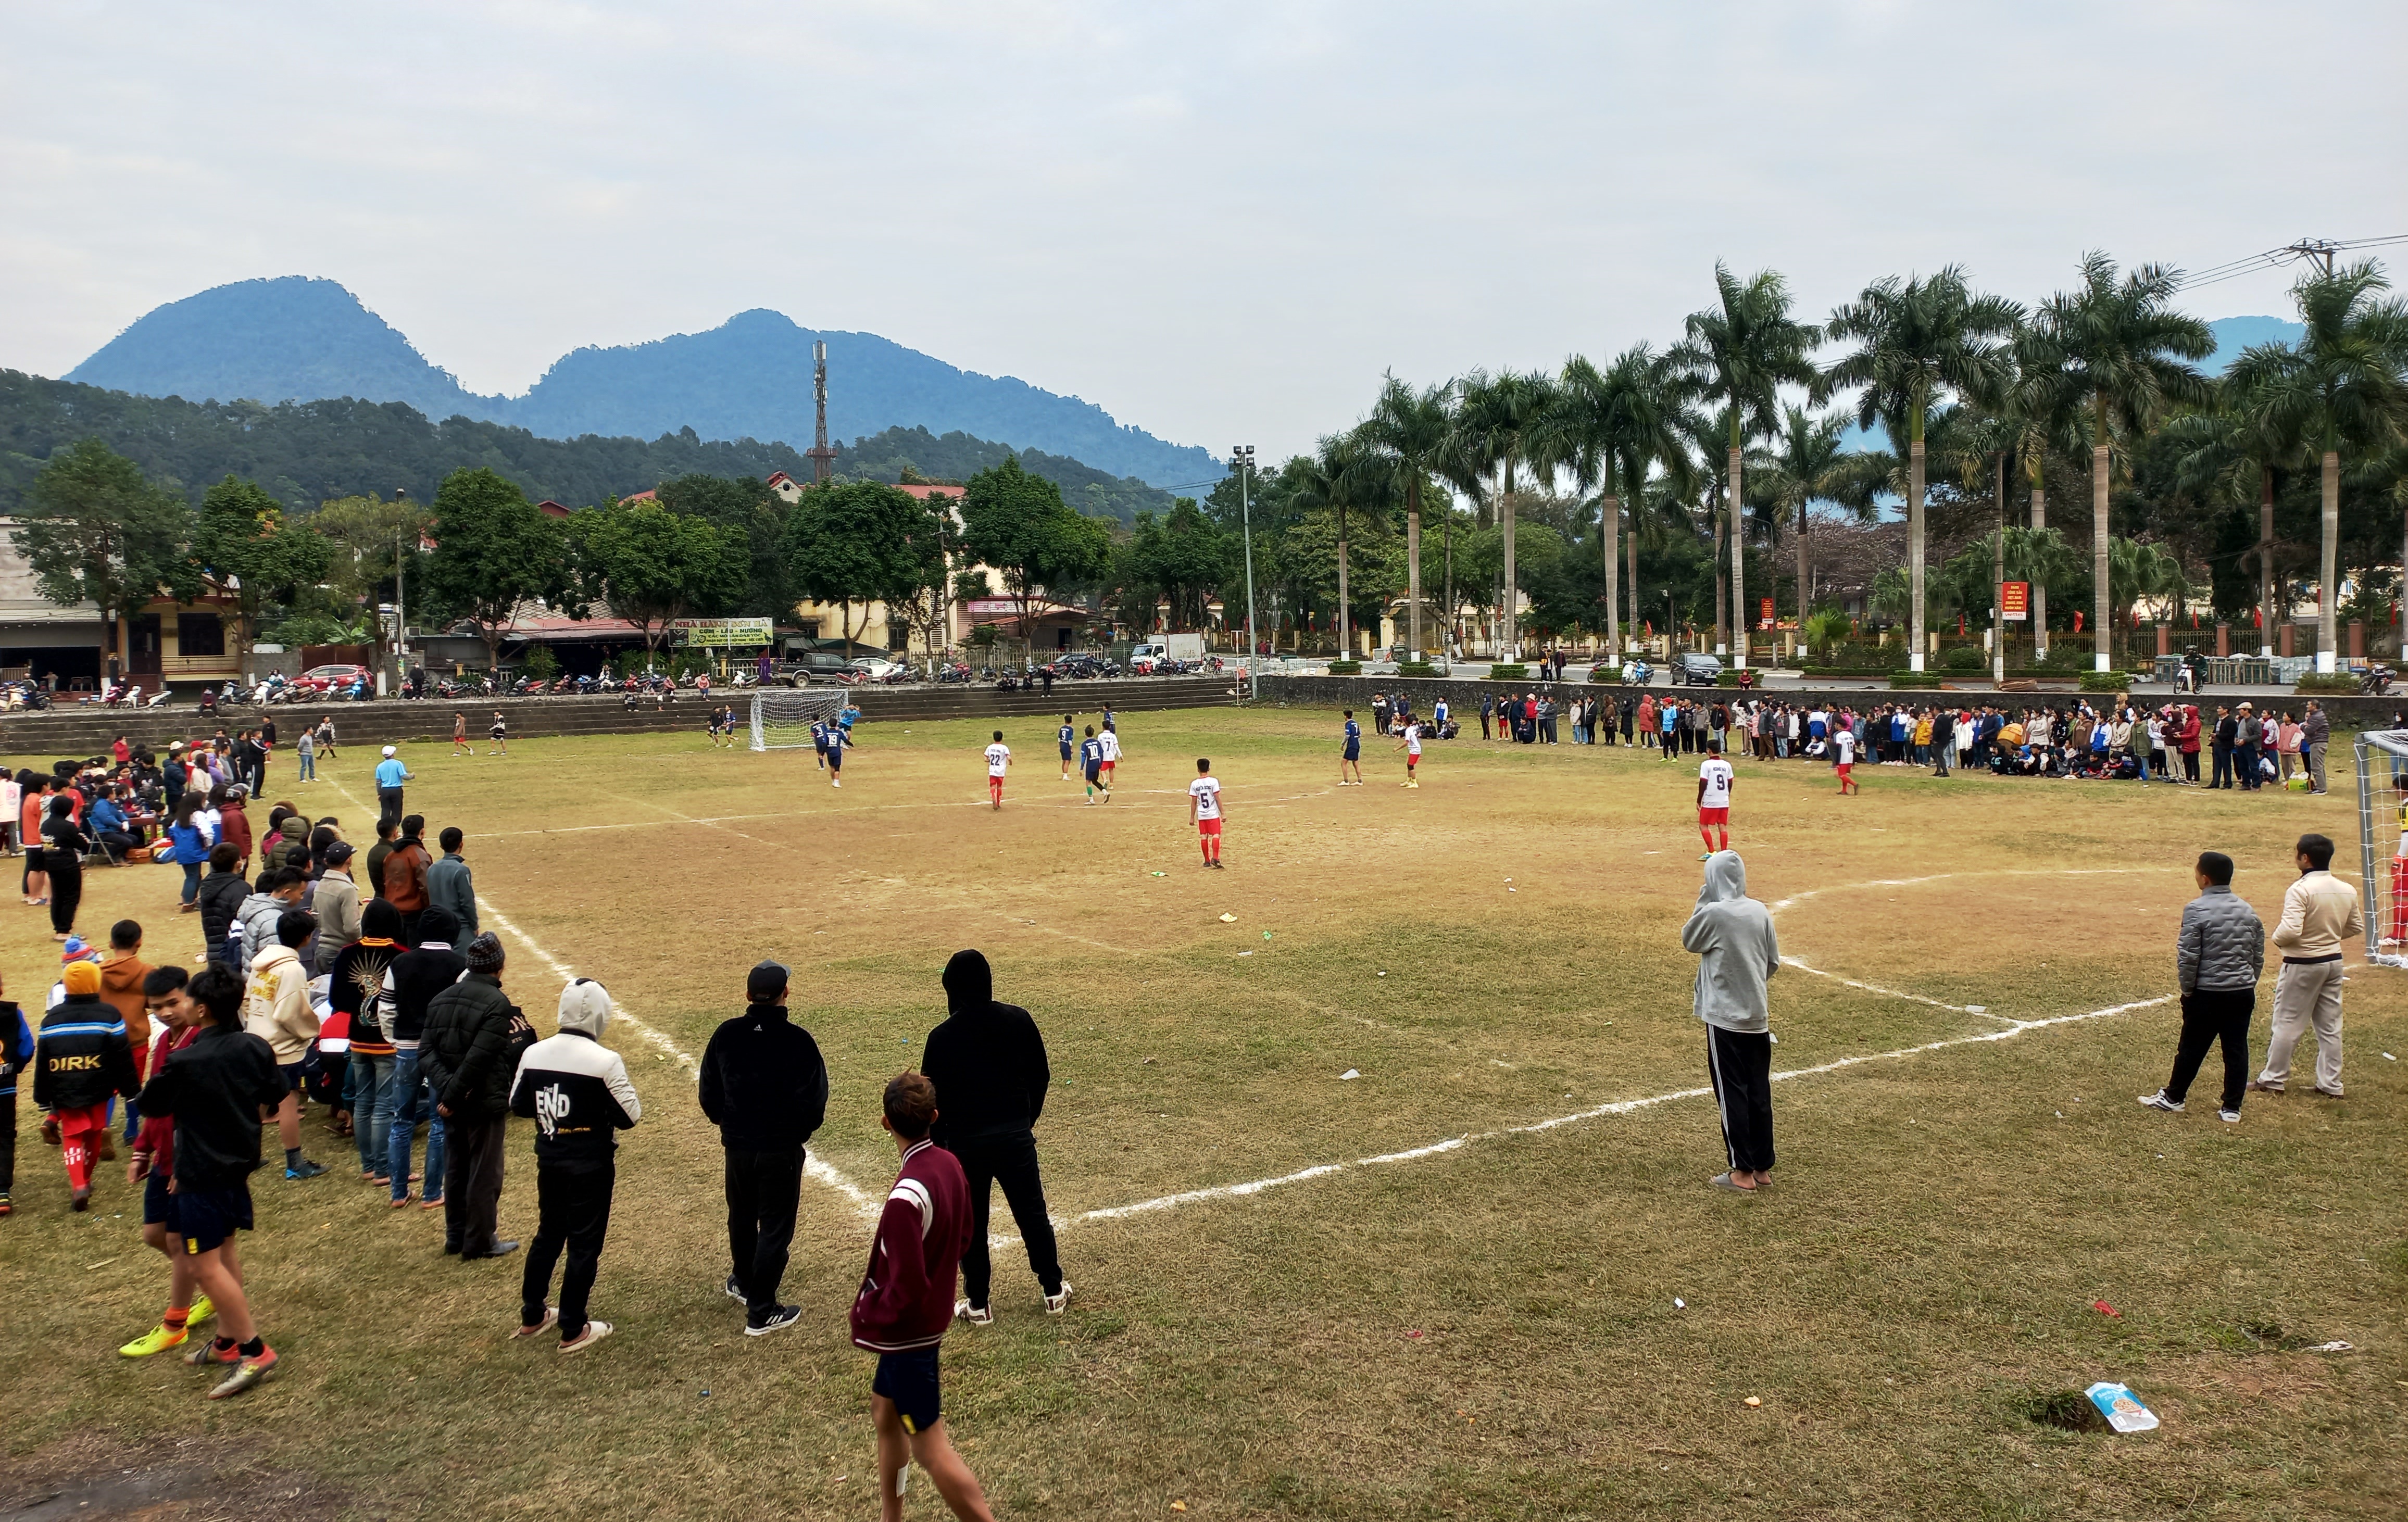 Vị Xuyên bế mạc giải bóng đá thiếu niên, nhi đồng chào mừng kỷ niệm 190 năm thành lập huyện.